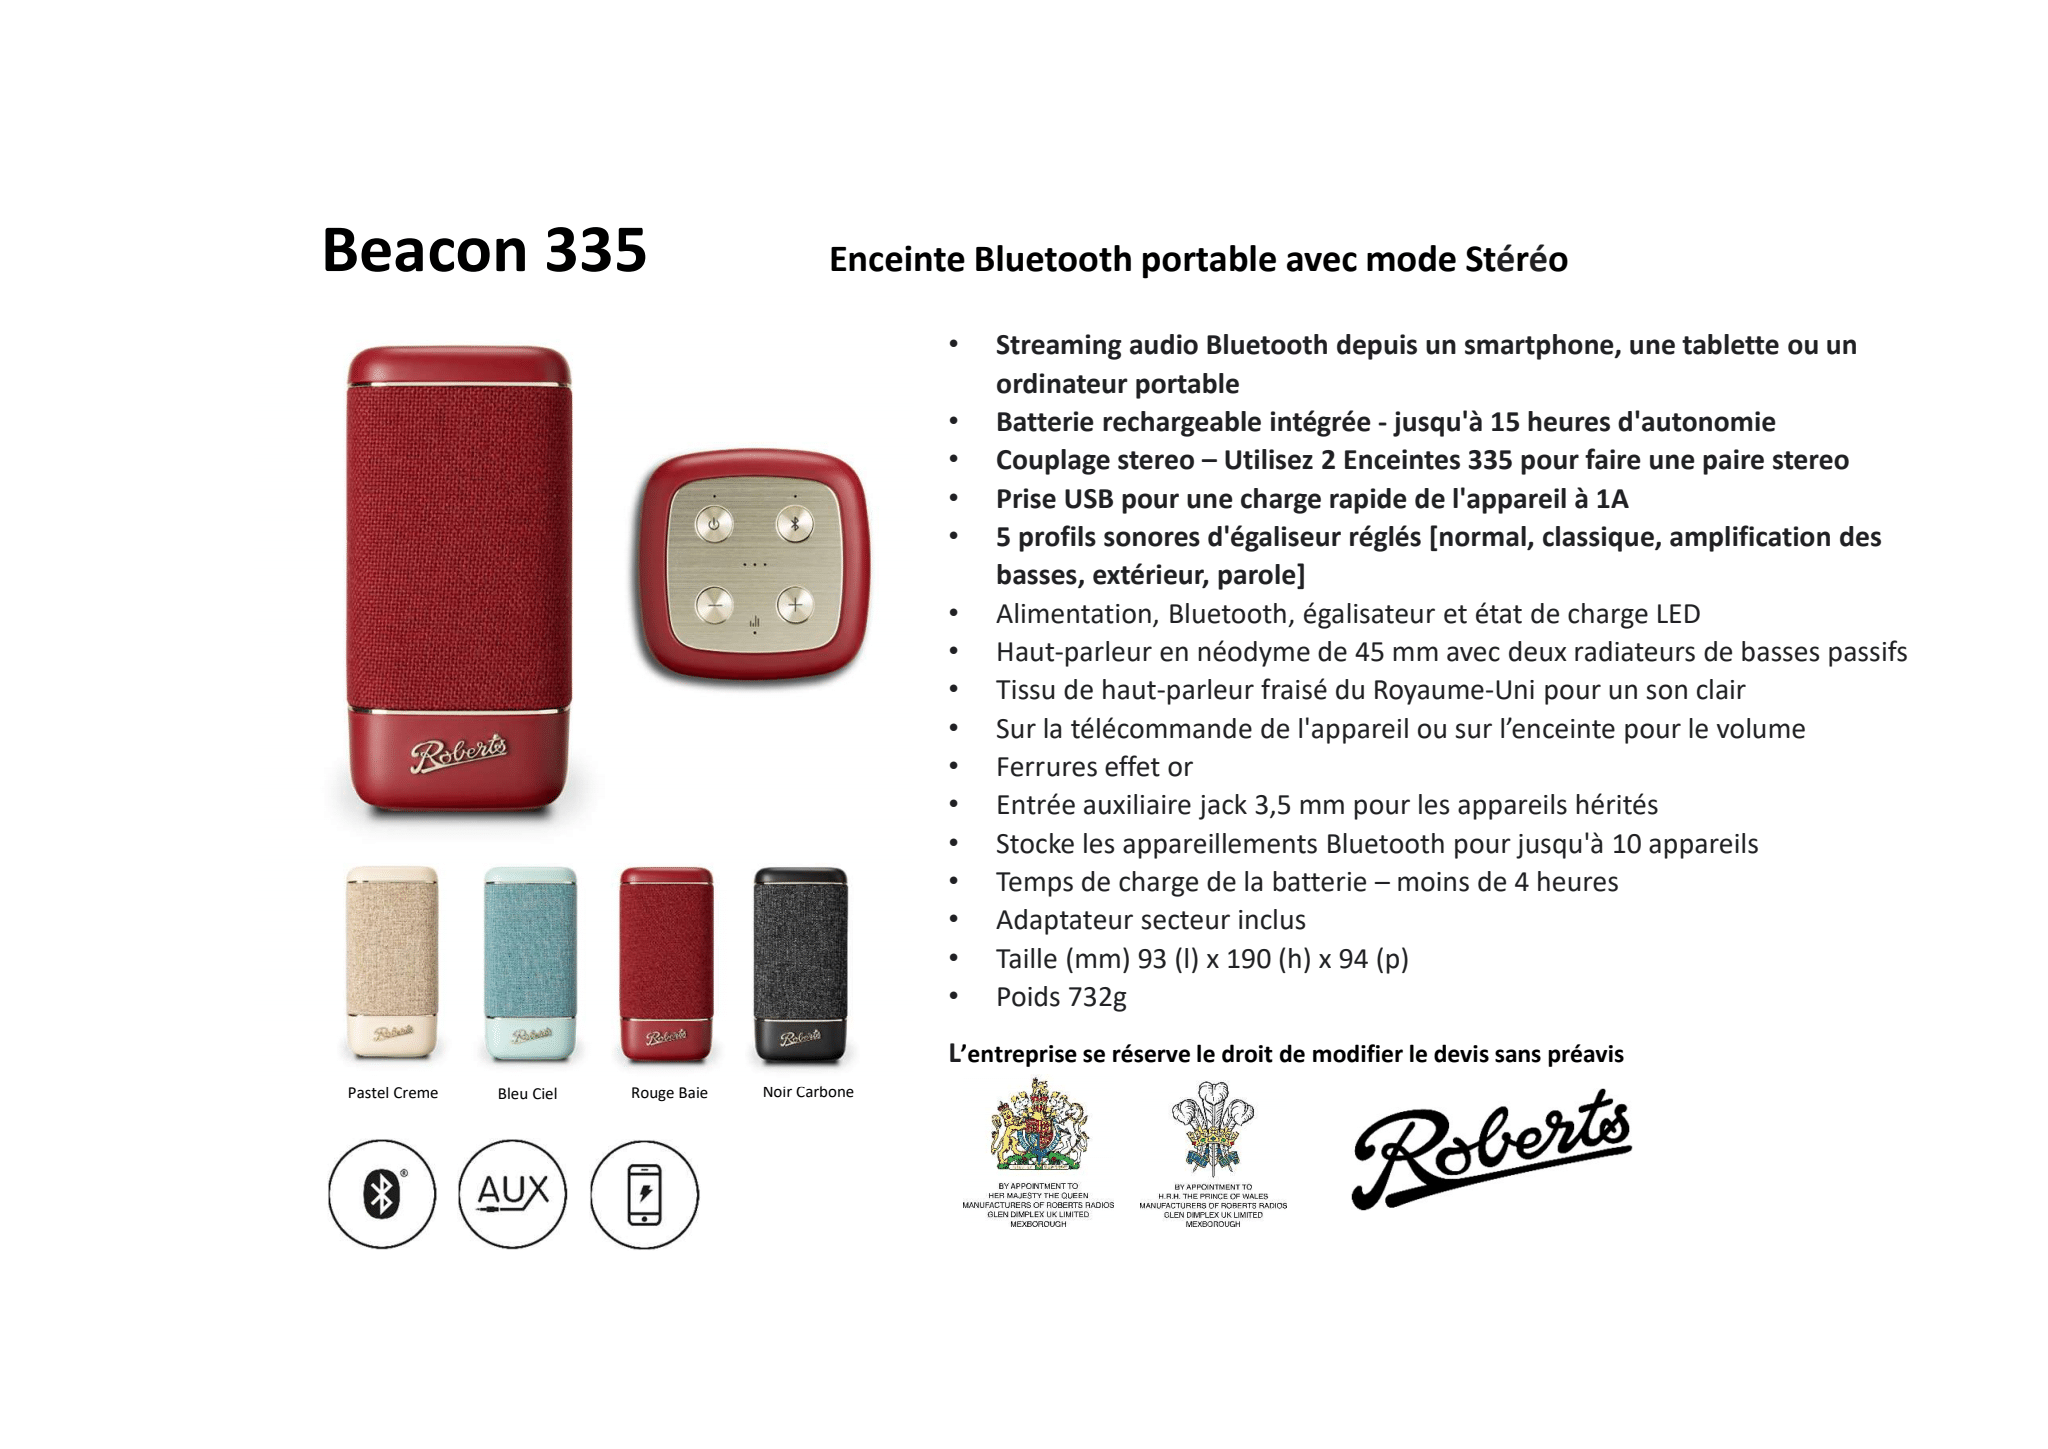 Roberts Beacon 335 - Fiche technique 